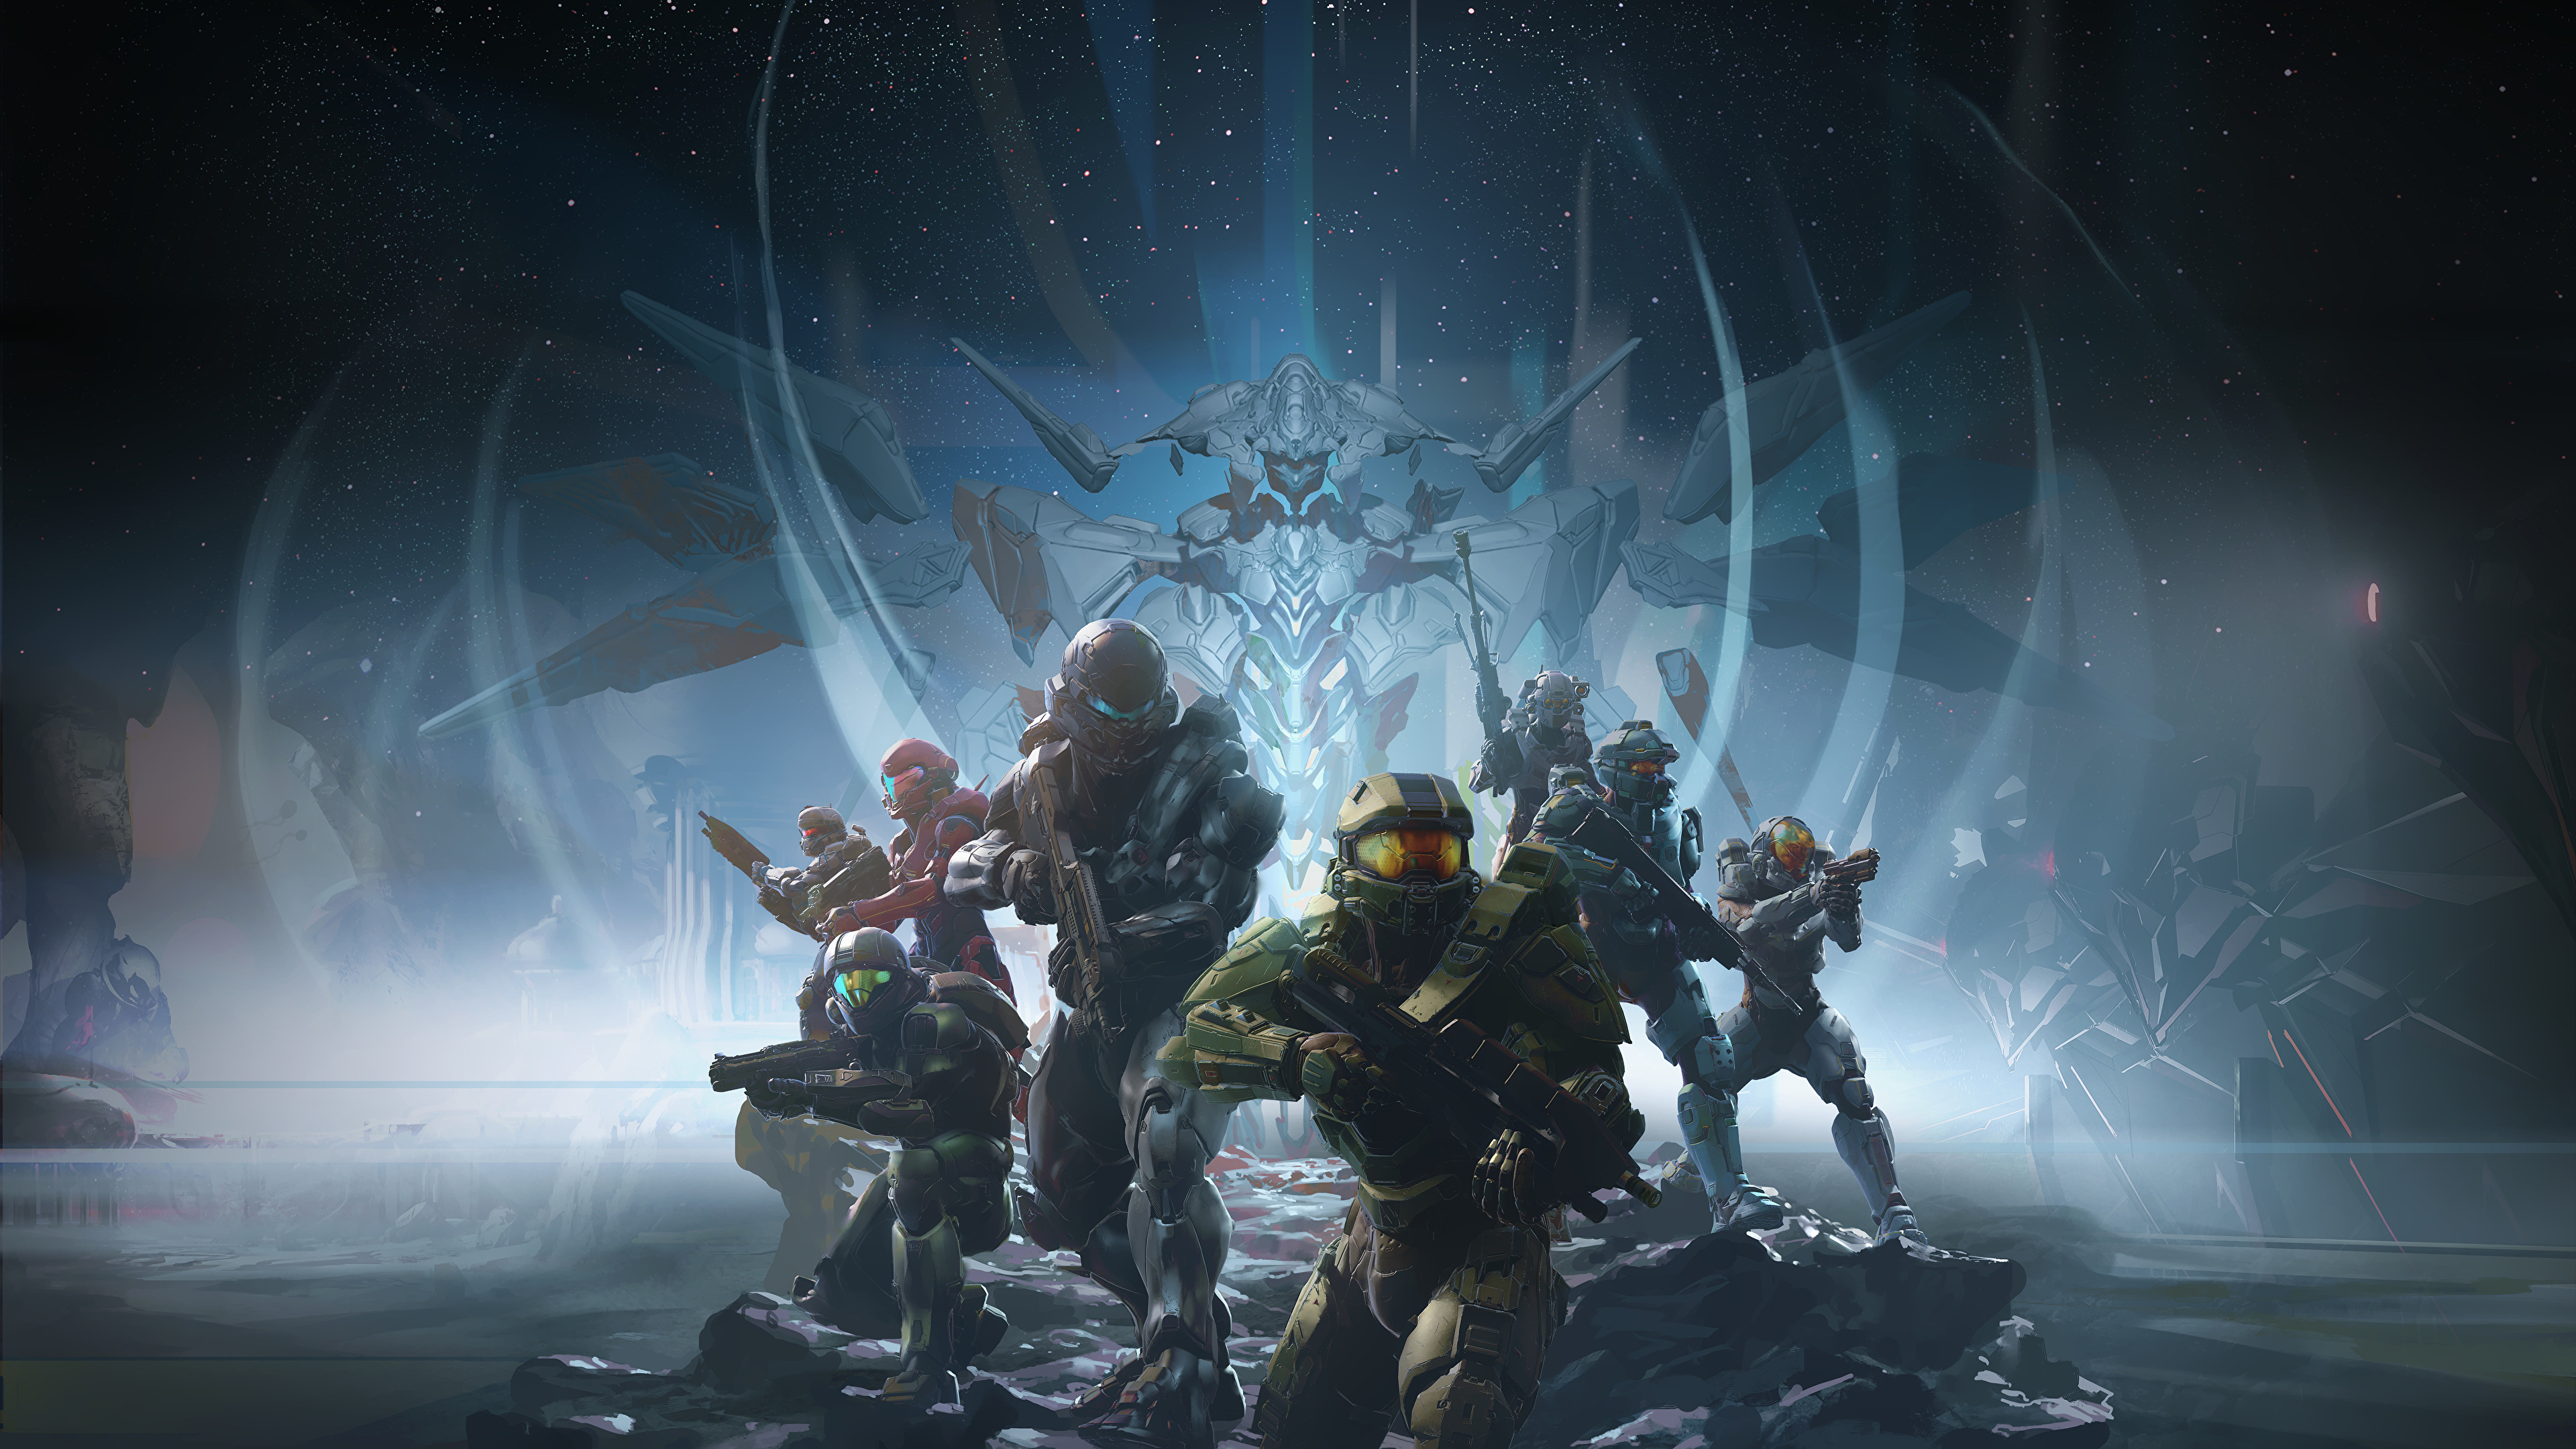 壁紙 3840x2160 ヘイロー ウォリアーズ Halo 5 Guardians 鎧 ゲーム ファンタジー ダウンロード 写真